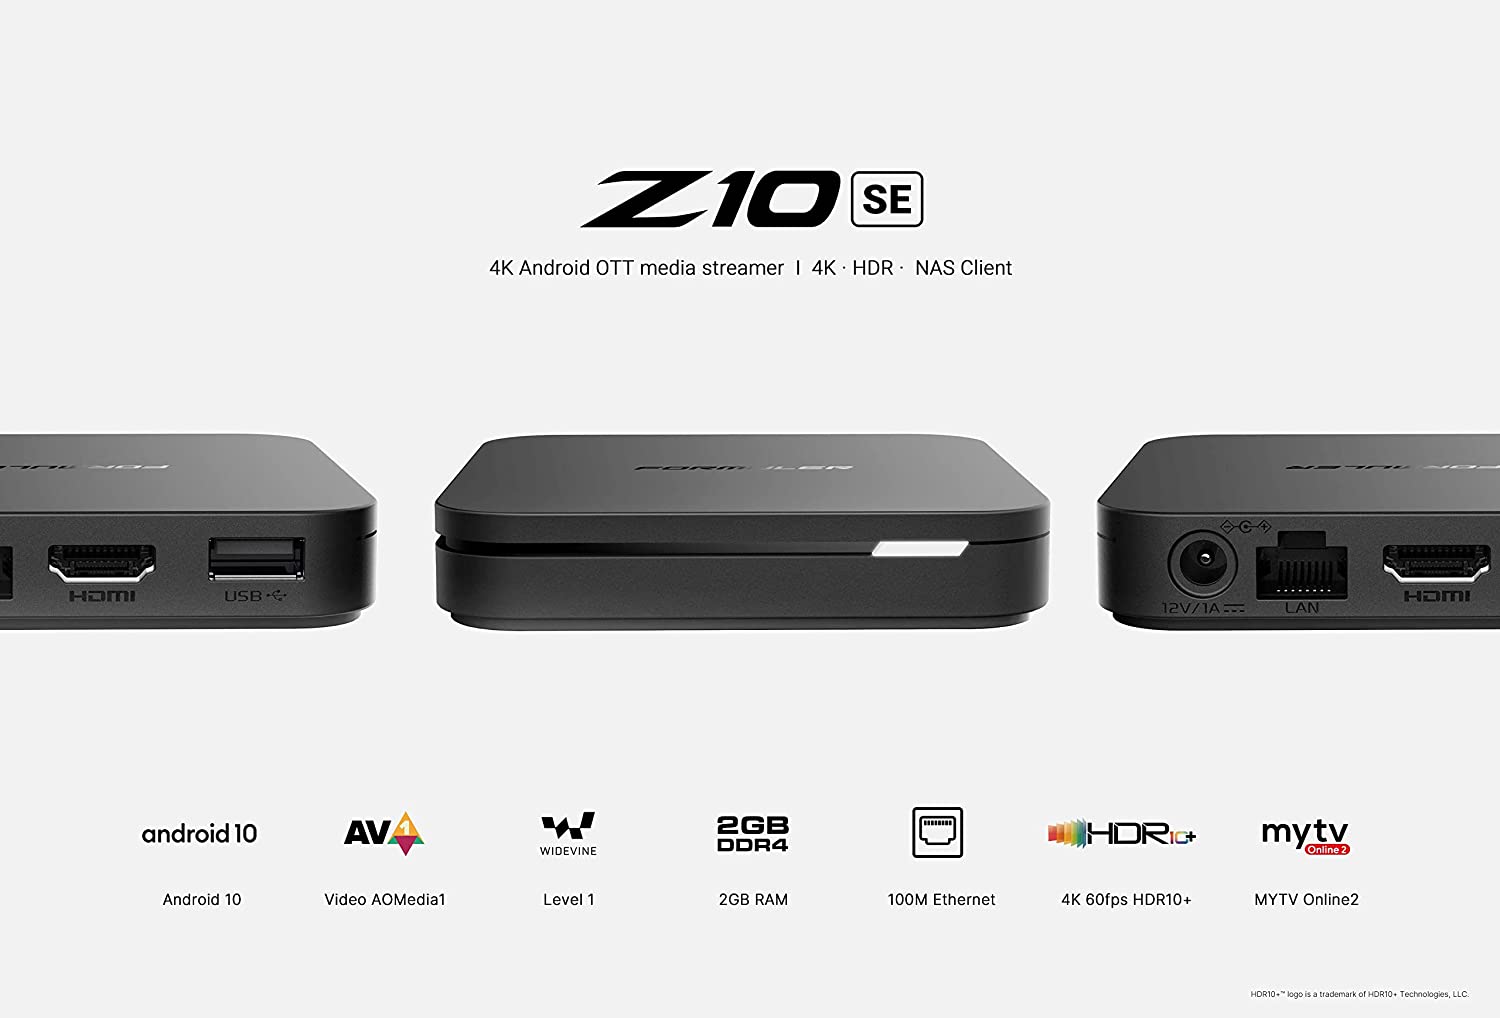 Z10SE: Formuler Z10 SE Android 10 Single Band WiFi 2GB Ram 4GB ROM 4K